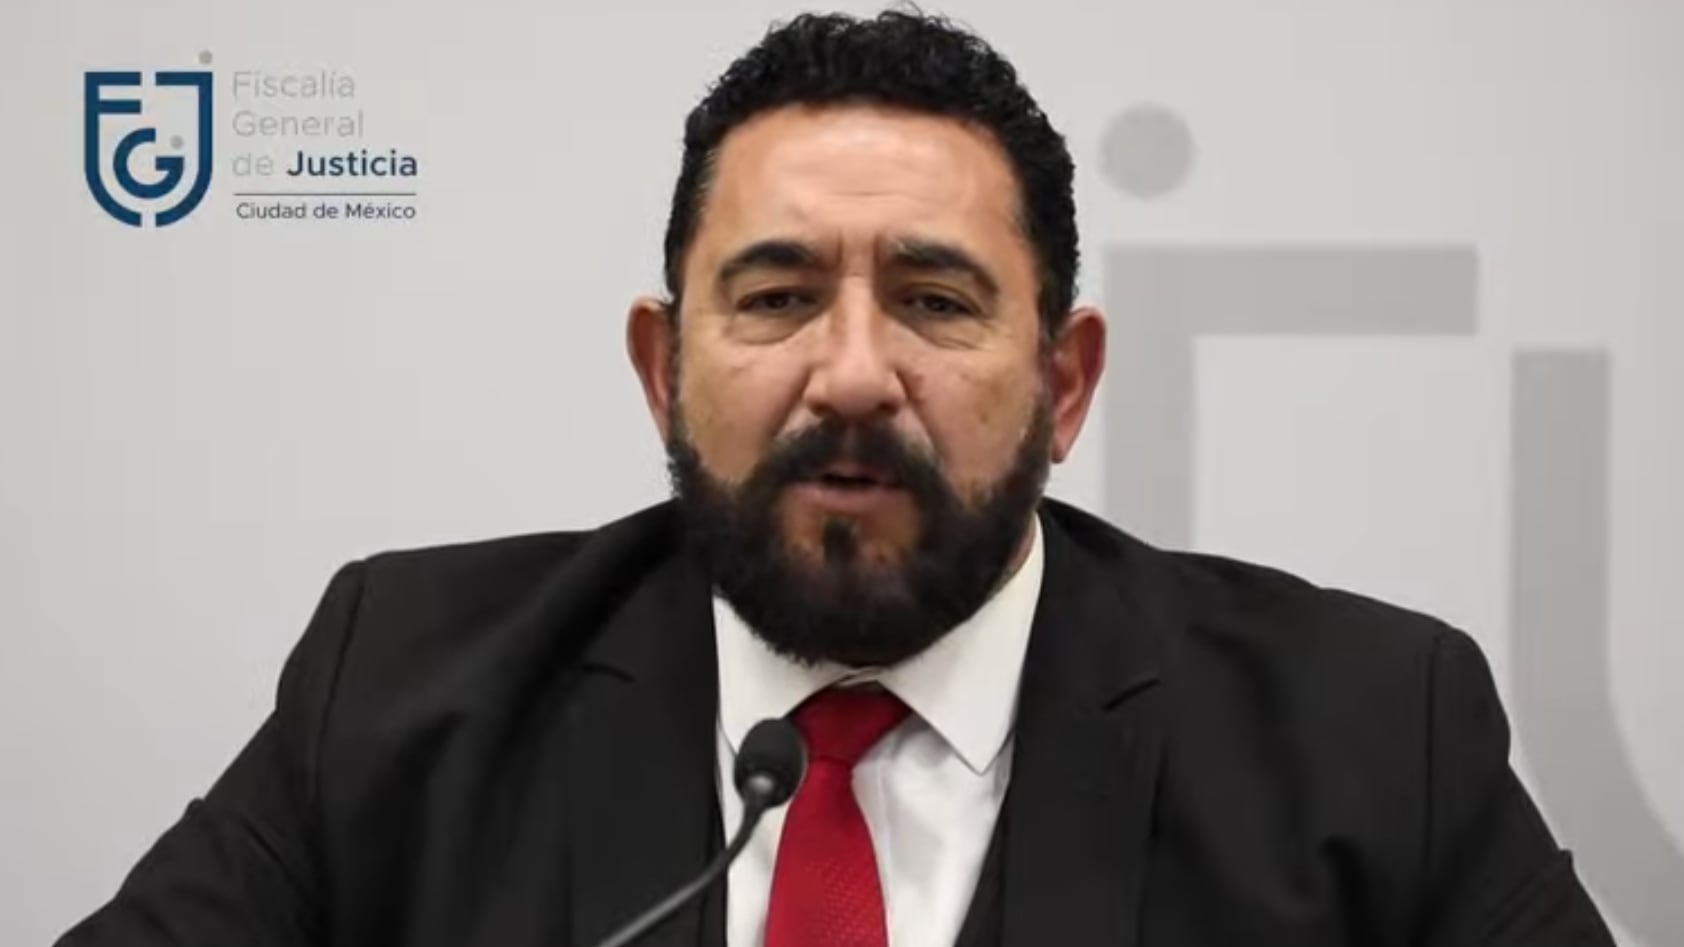 Vocero de la Fiscalía CDMX, Ulises López Lara, presenta los resultados de la investigación sobre los accidentes registrados en el Metro CDMX.